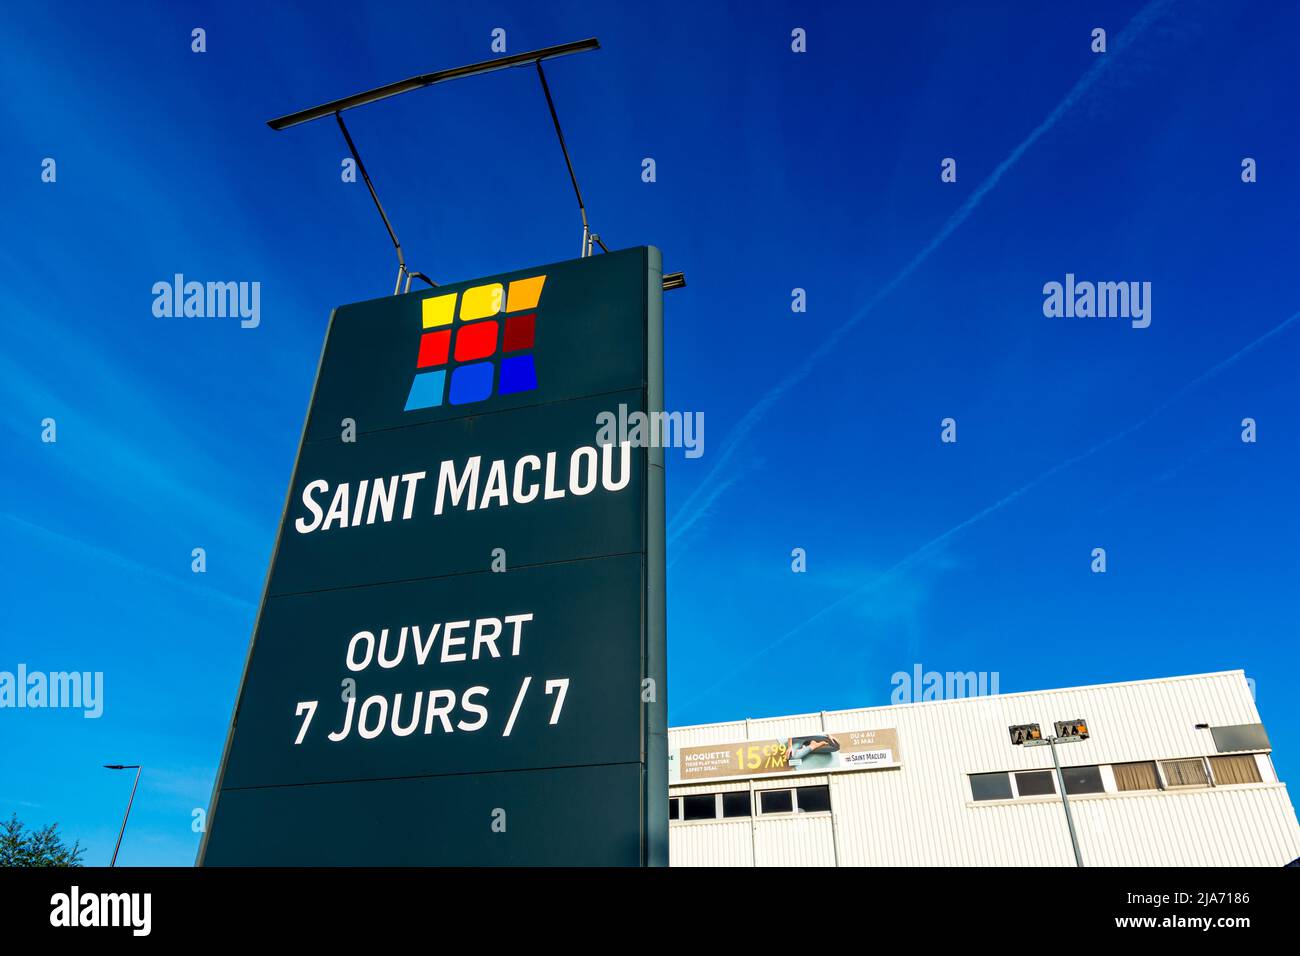 Schild eines Ladens in Saint-Maclou. Saint-Maclou ist ein französisches Unternehmen, das sich auf die Dekoration von Wänden, Böden und Fenstern spezialisiert hat Stockfoto